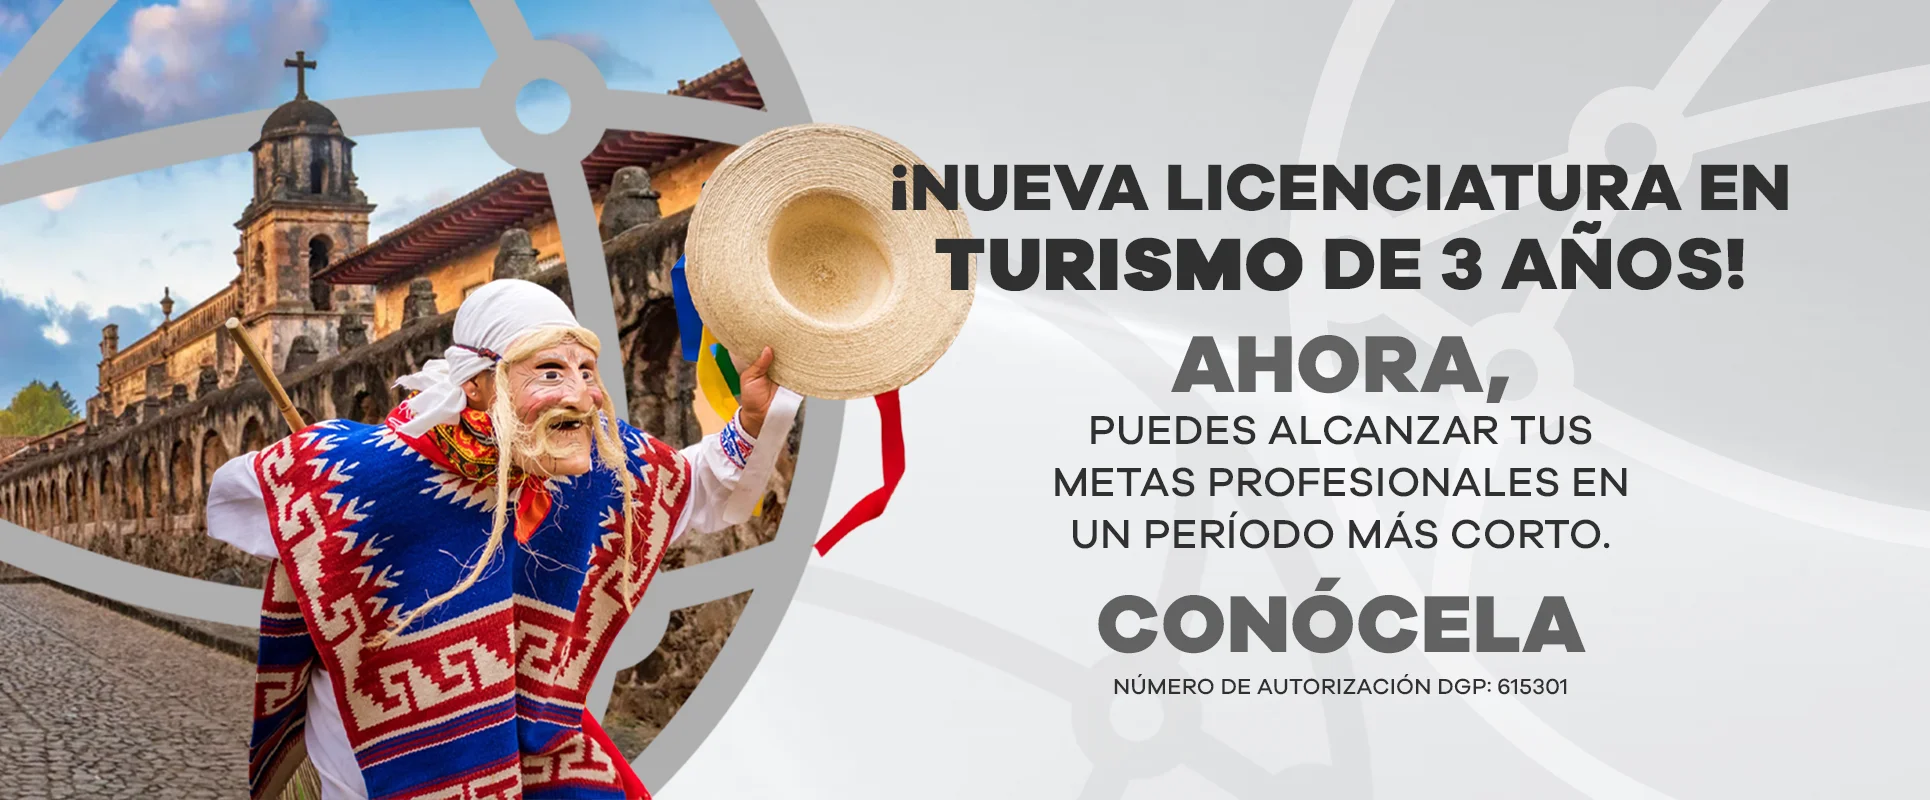 Nueva licenciatura en turismo sustentable de 3 años